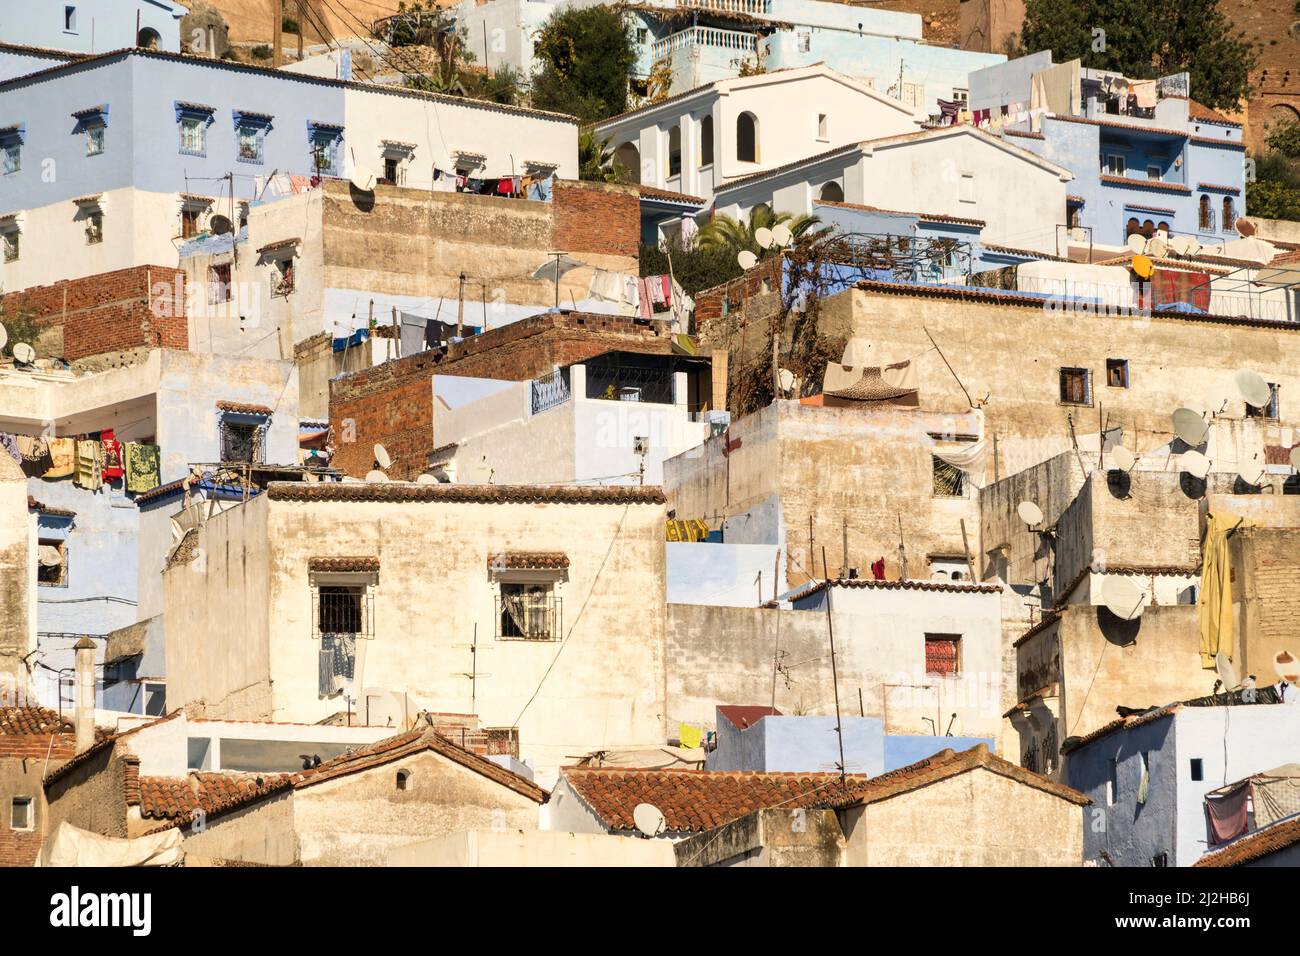 Maroc, Chefchaouen, maisons traditionnelles à flanc de colline Banque D'Images